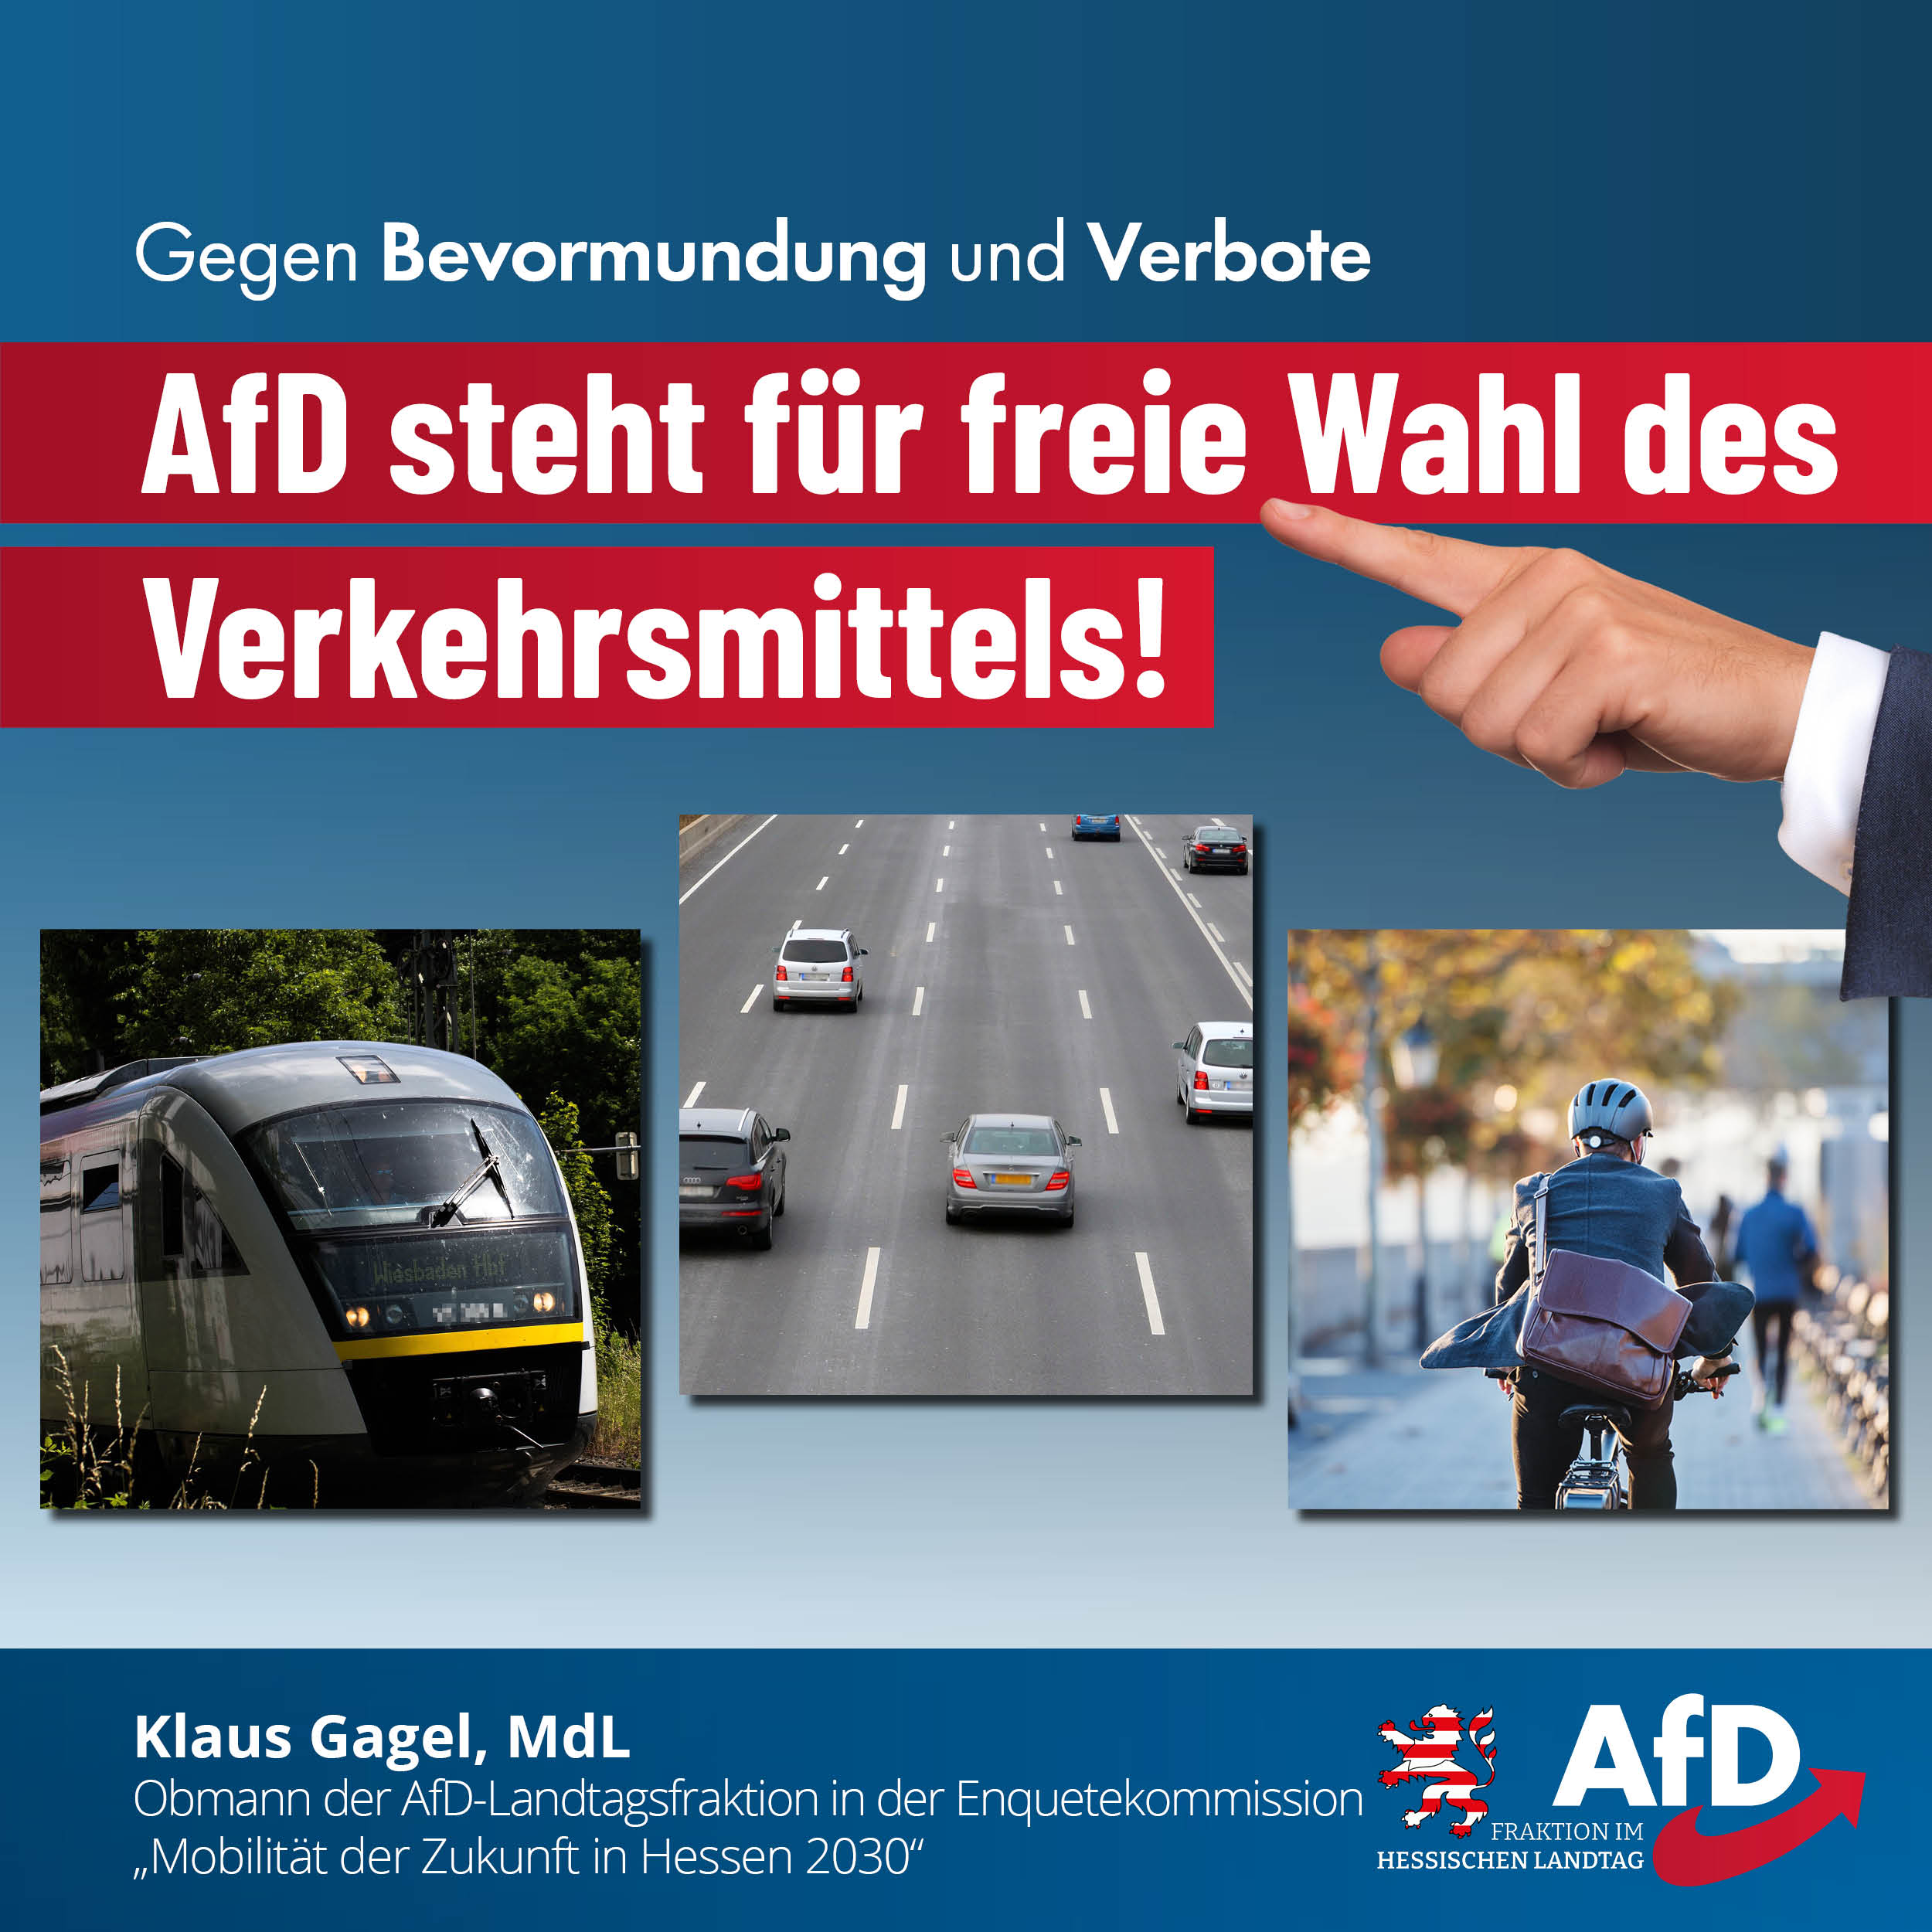 You are currently viewing AfD steht für freie Wahl des Verkehrsmittels, gegen Bevormundung und Verbote